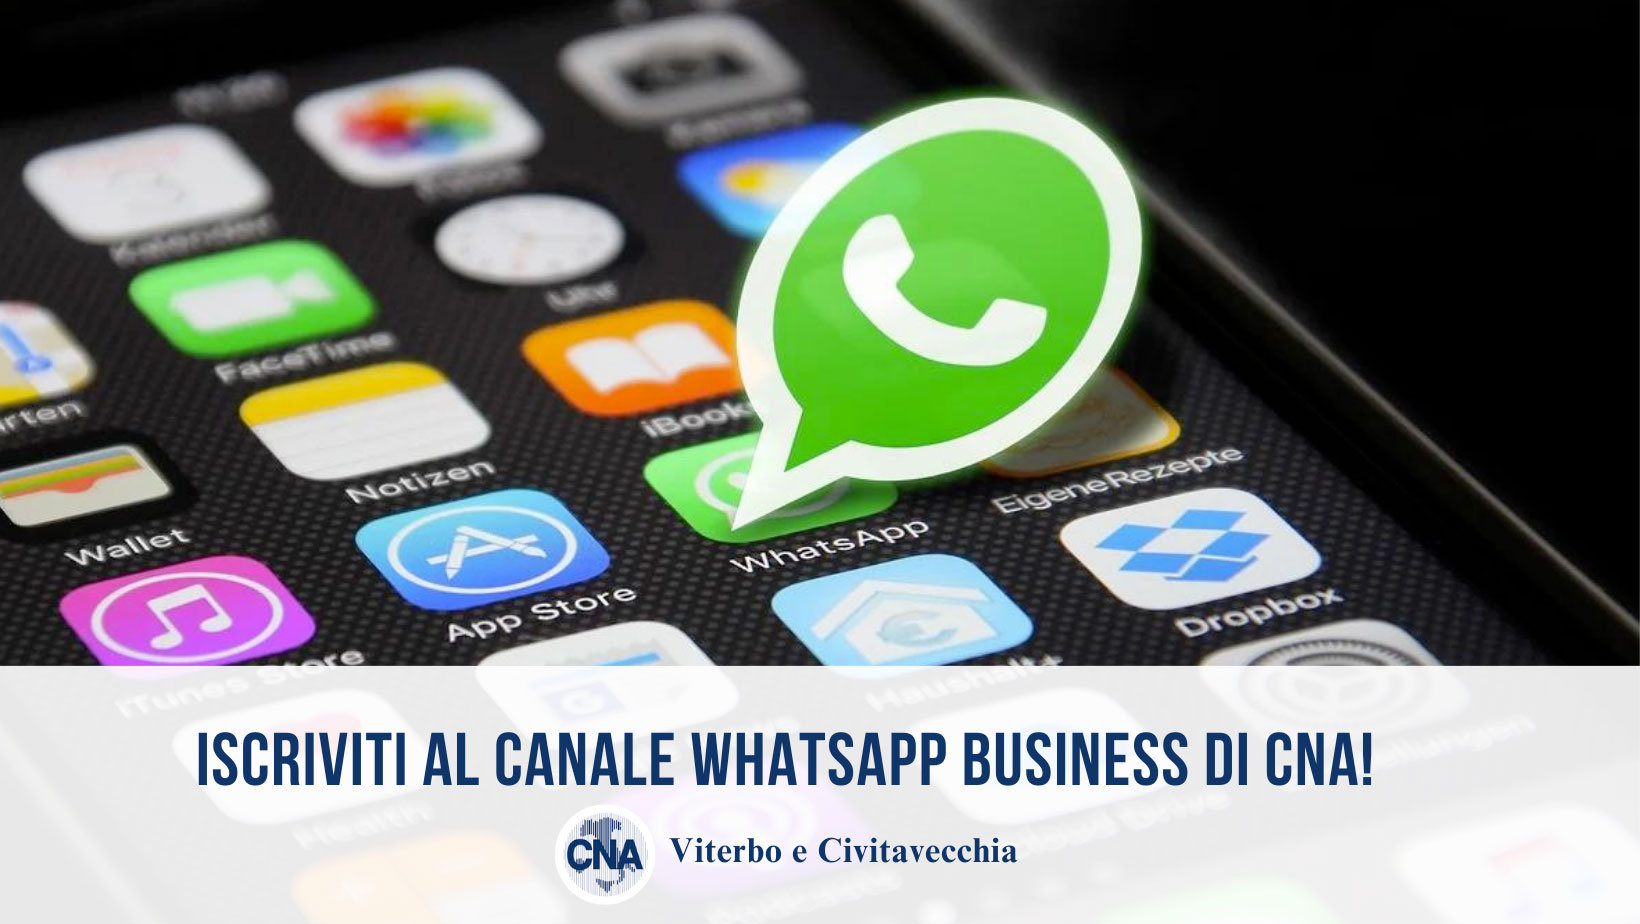 Attivo il nuovo servizio Whatsapp di CNA Viterbo e Civitavecchia